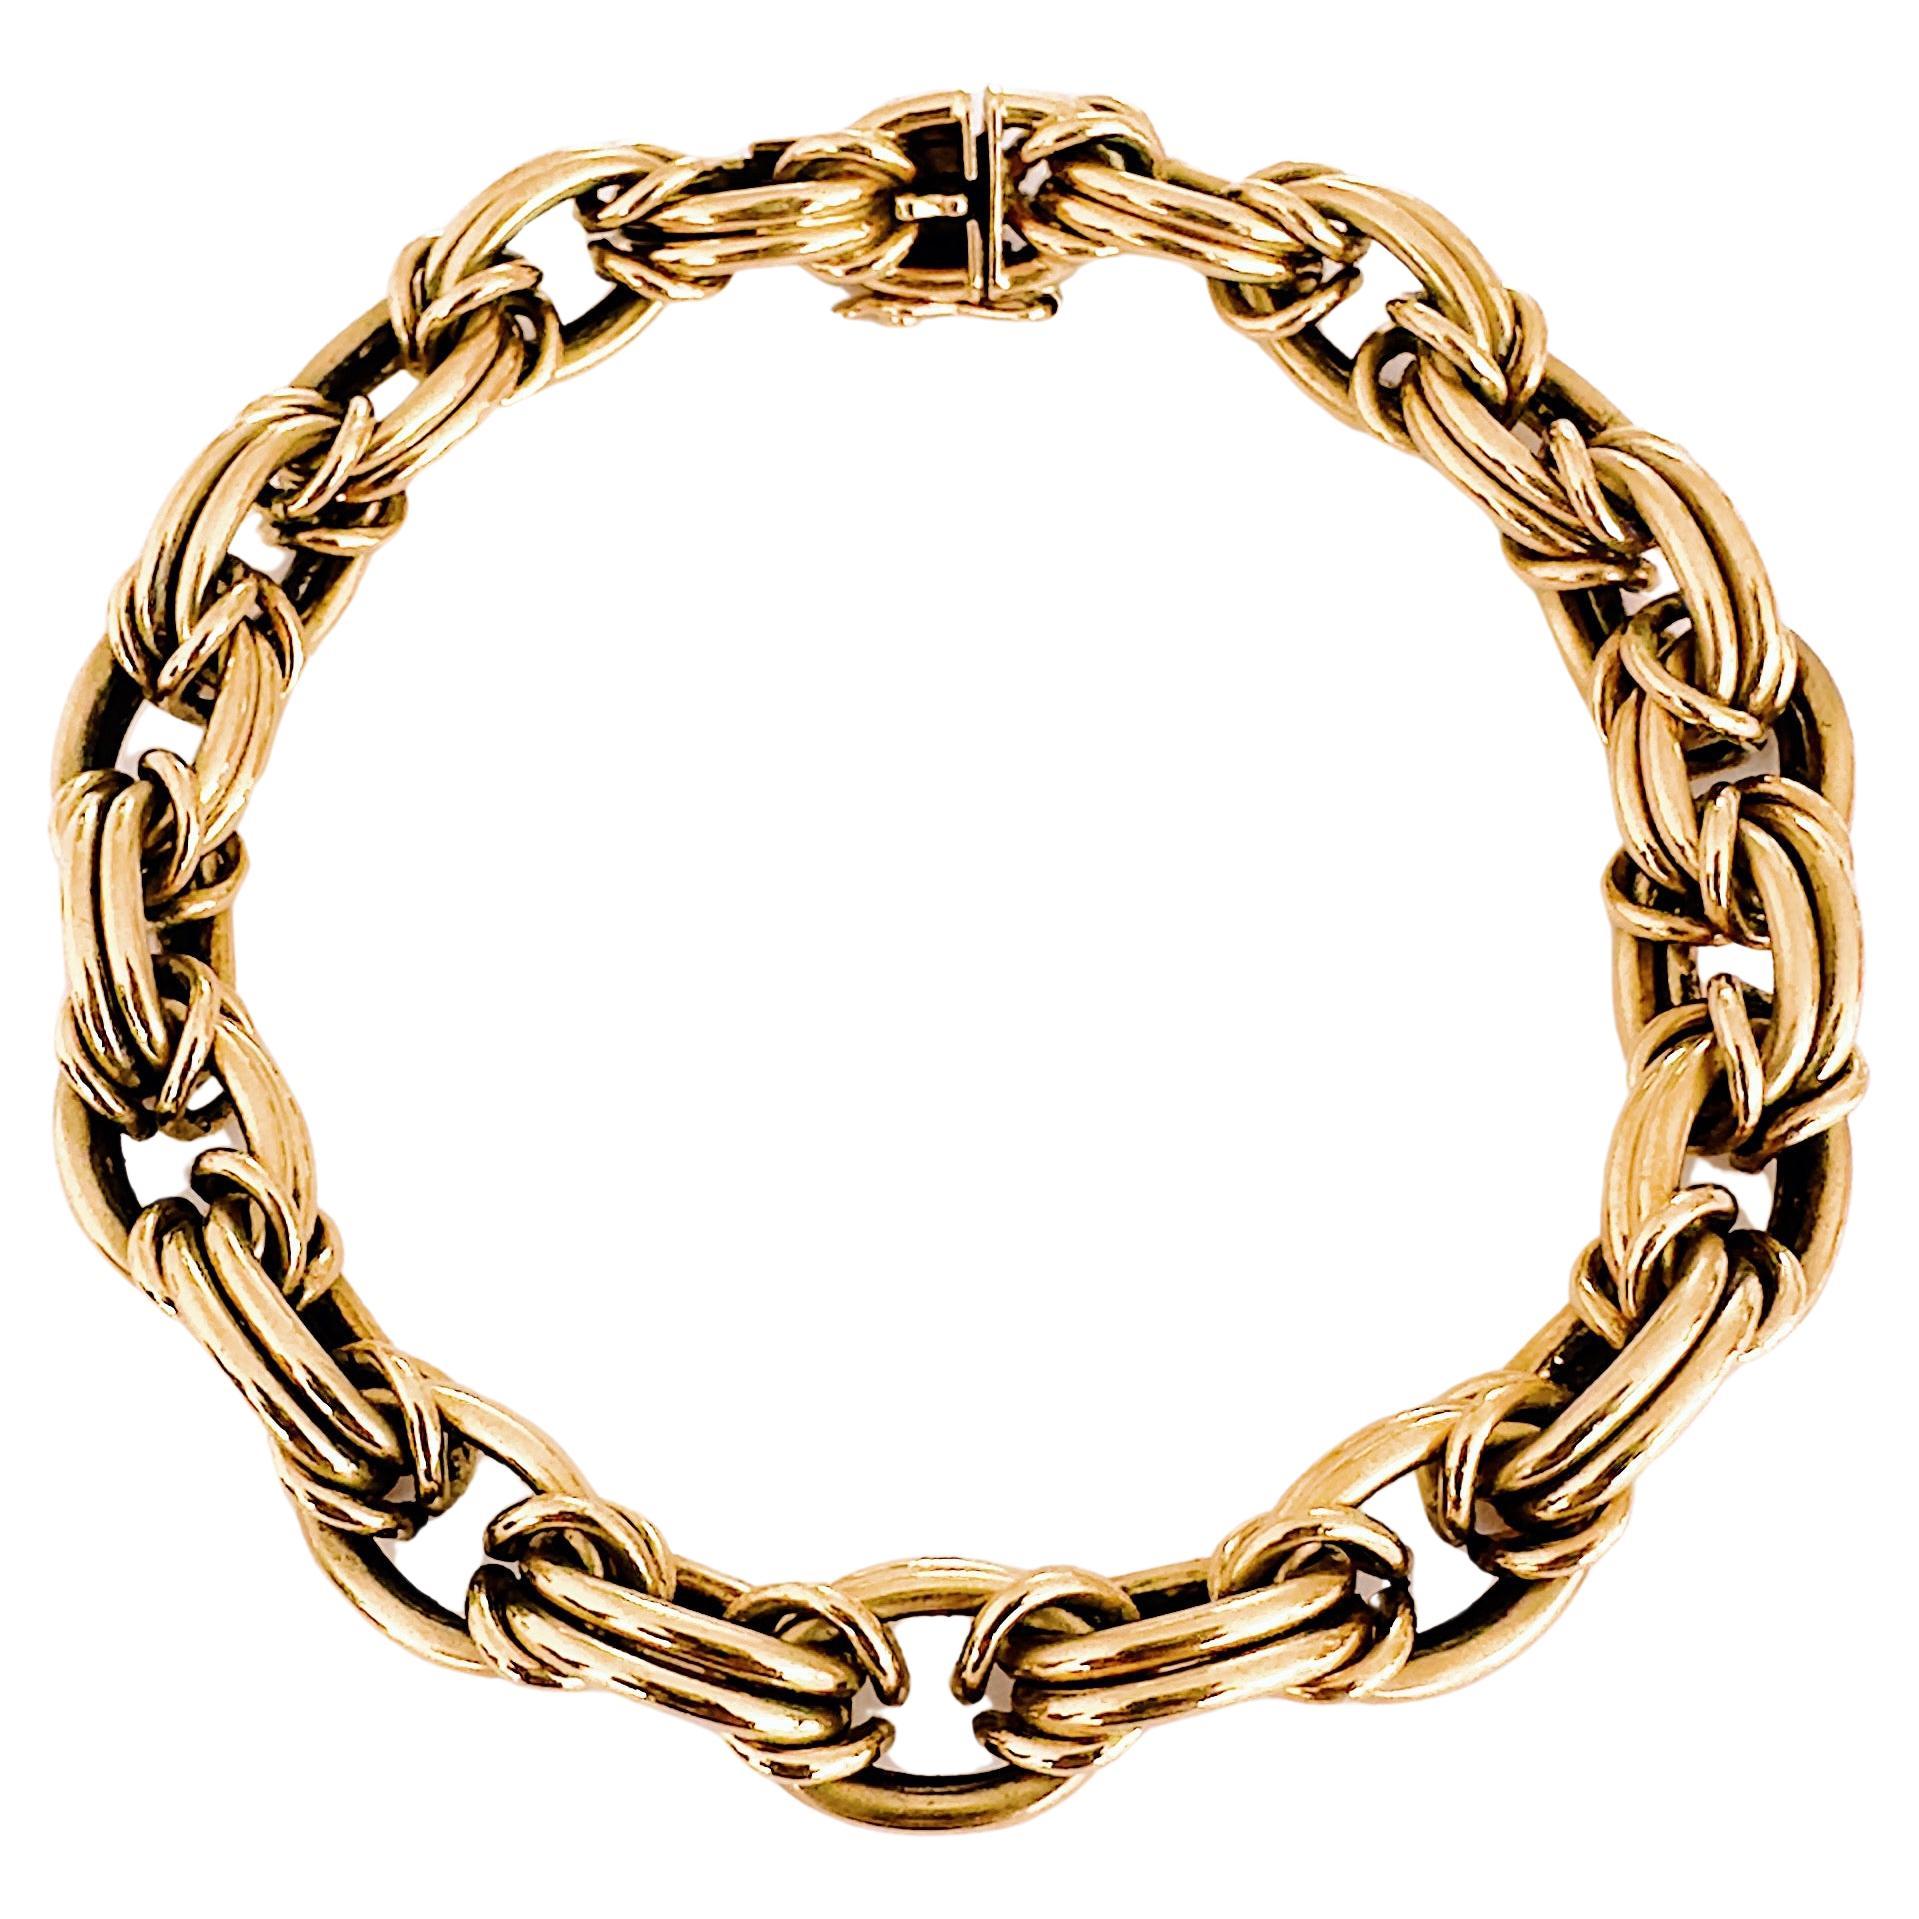 Van Cleef & Arpels, 18k Gold "Royal" Link Bracelet, Late 1960s